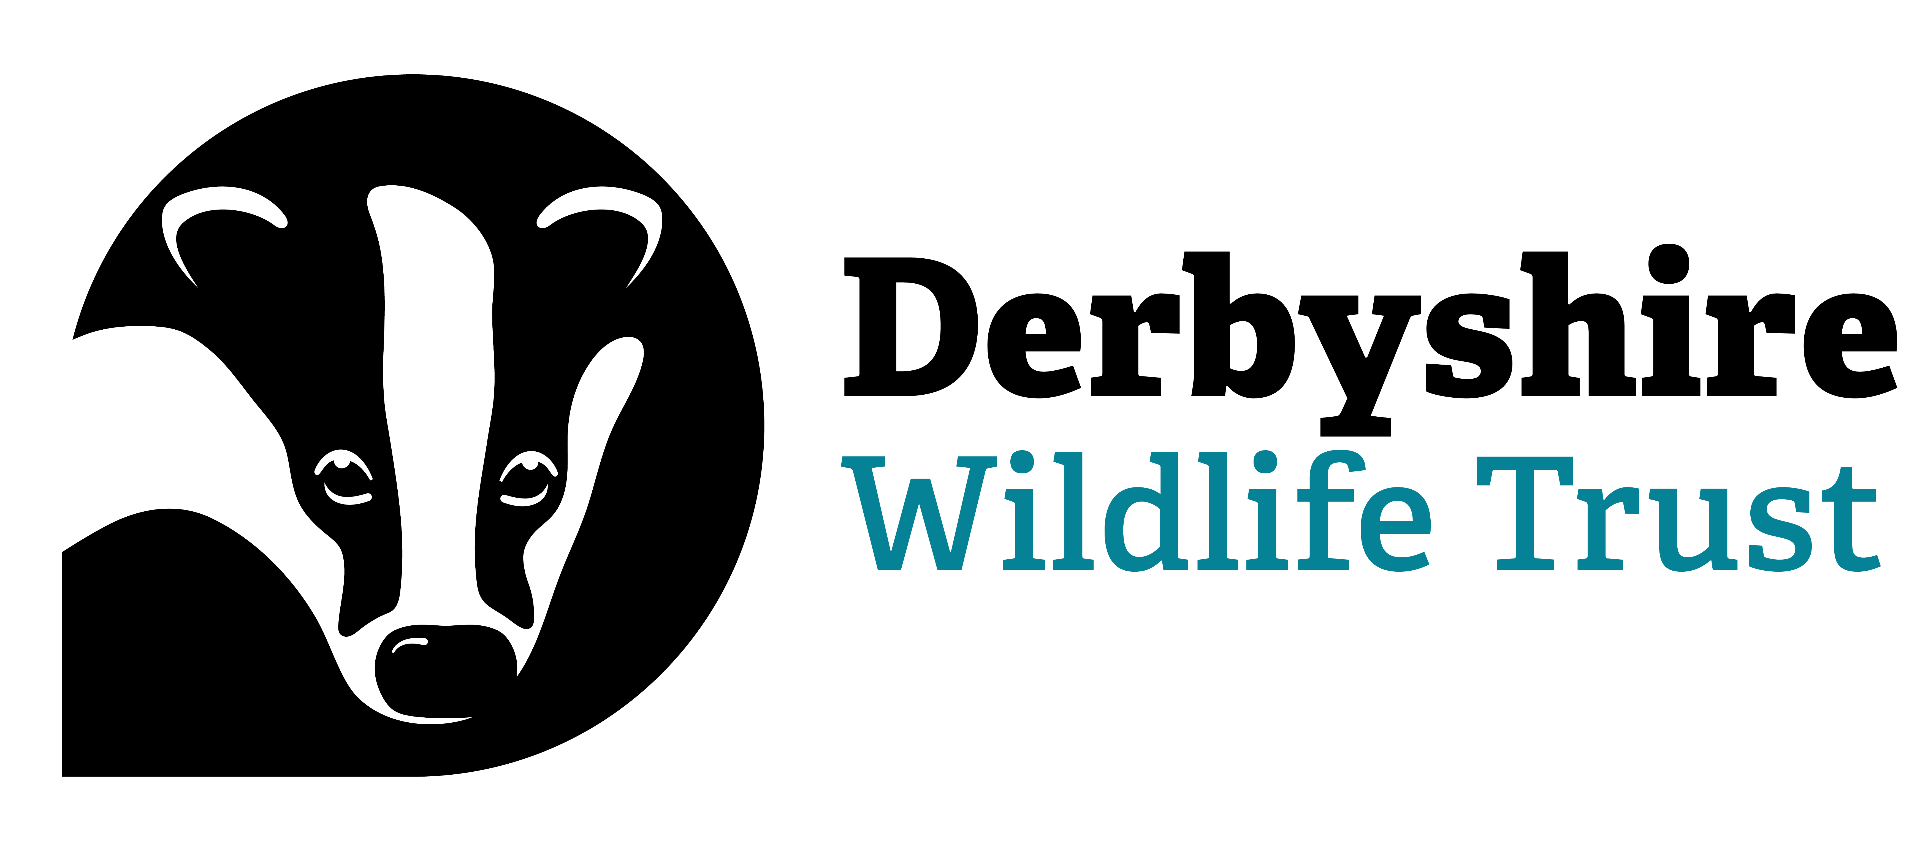 Derbyshire Wildlife Trust logo